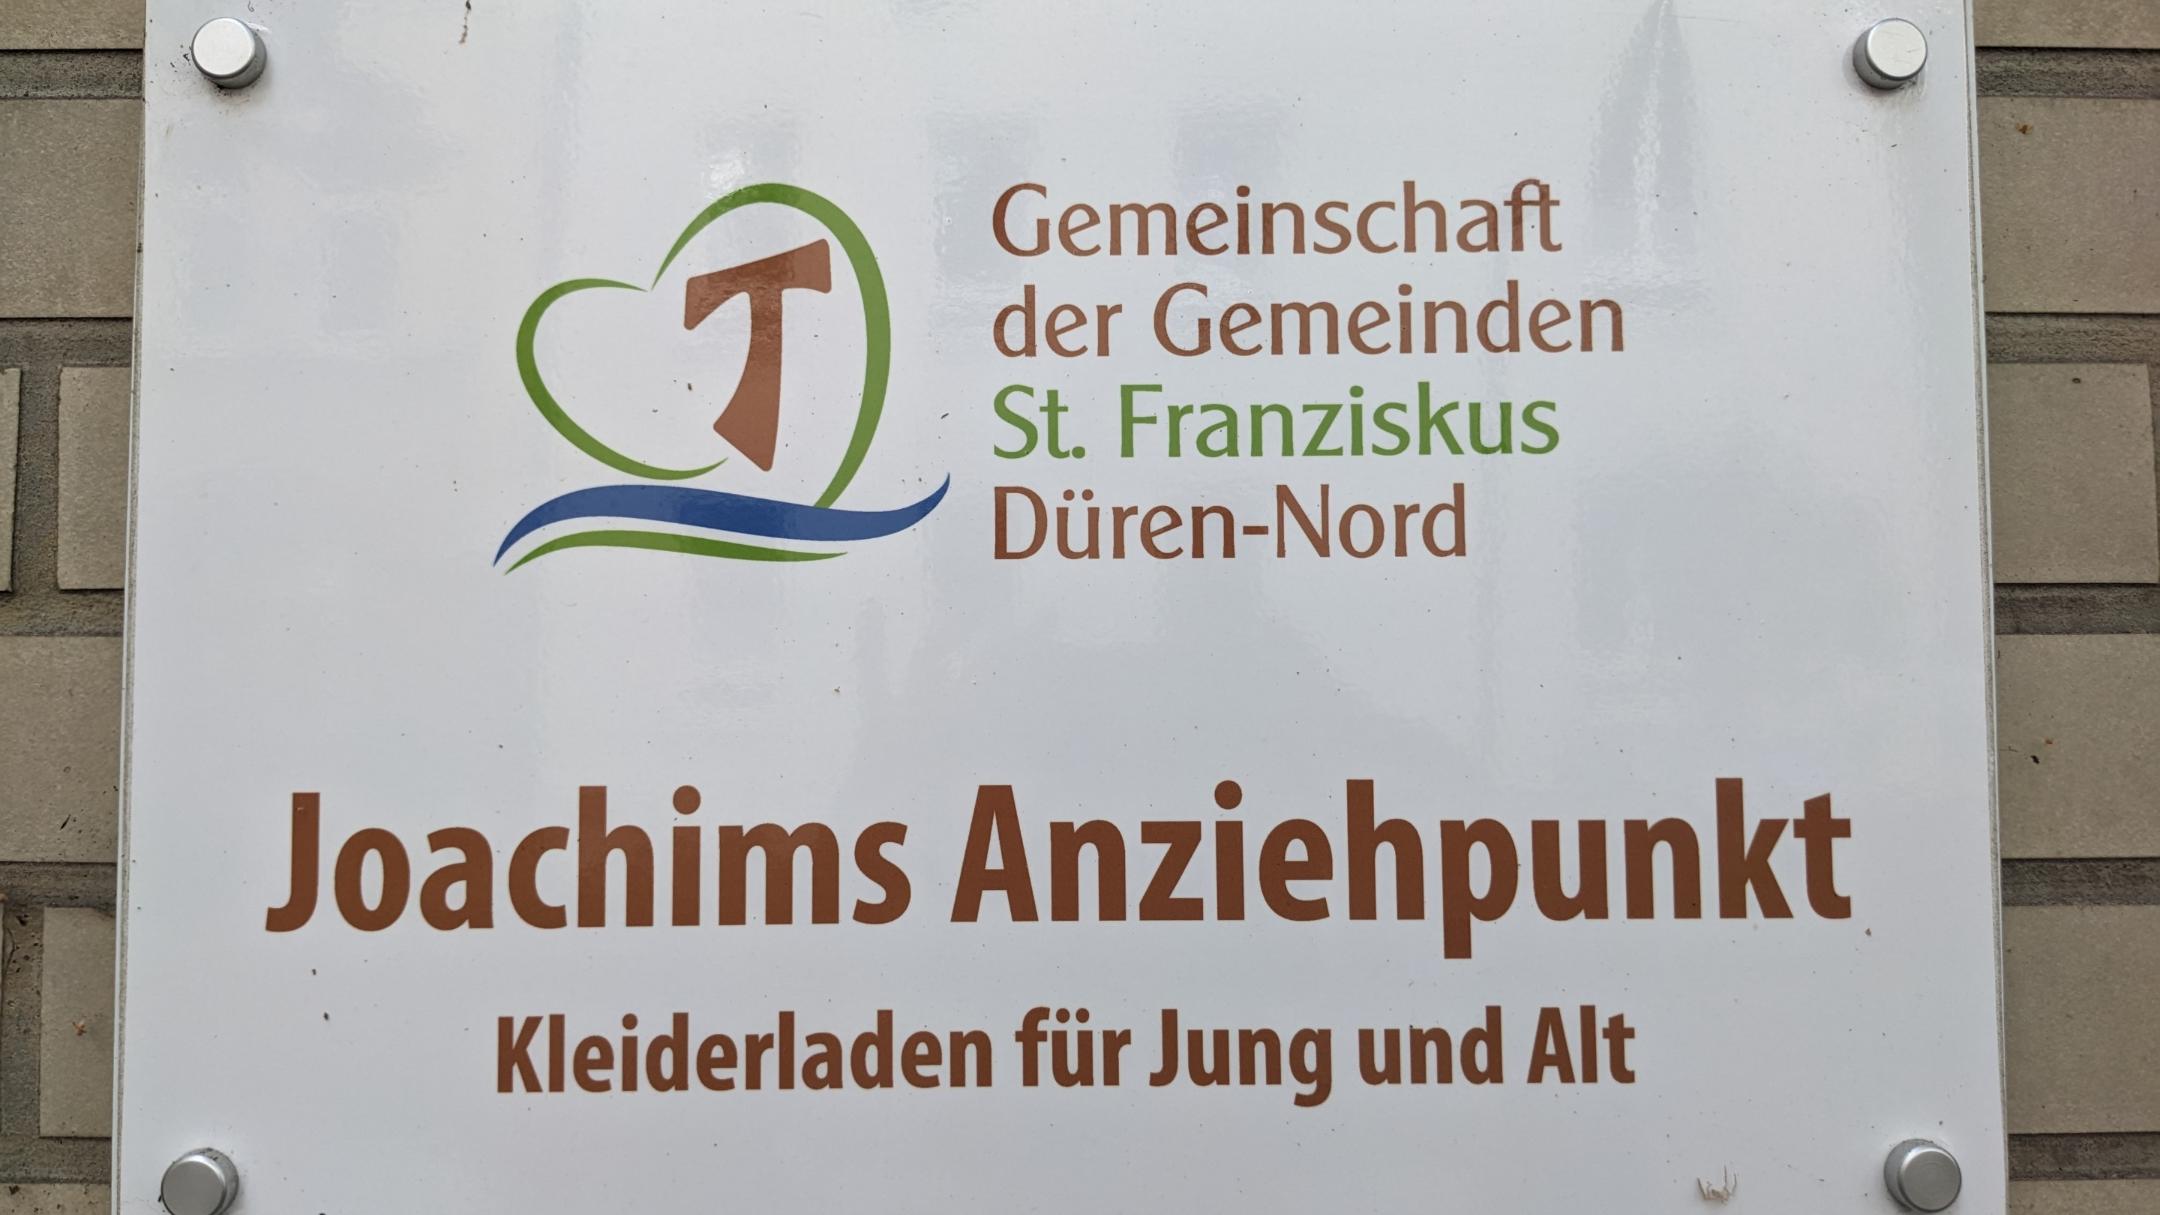 'Joachims Anziehpunkt'  ist ein Angebot der GdG St. Franziskus im Pfarrheim neben der Joachimskirche.